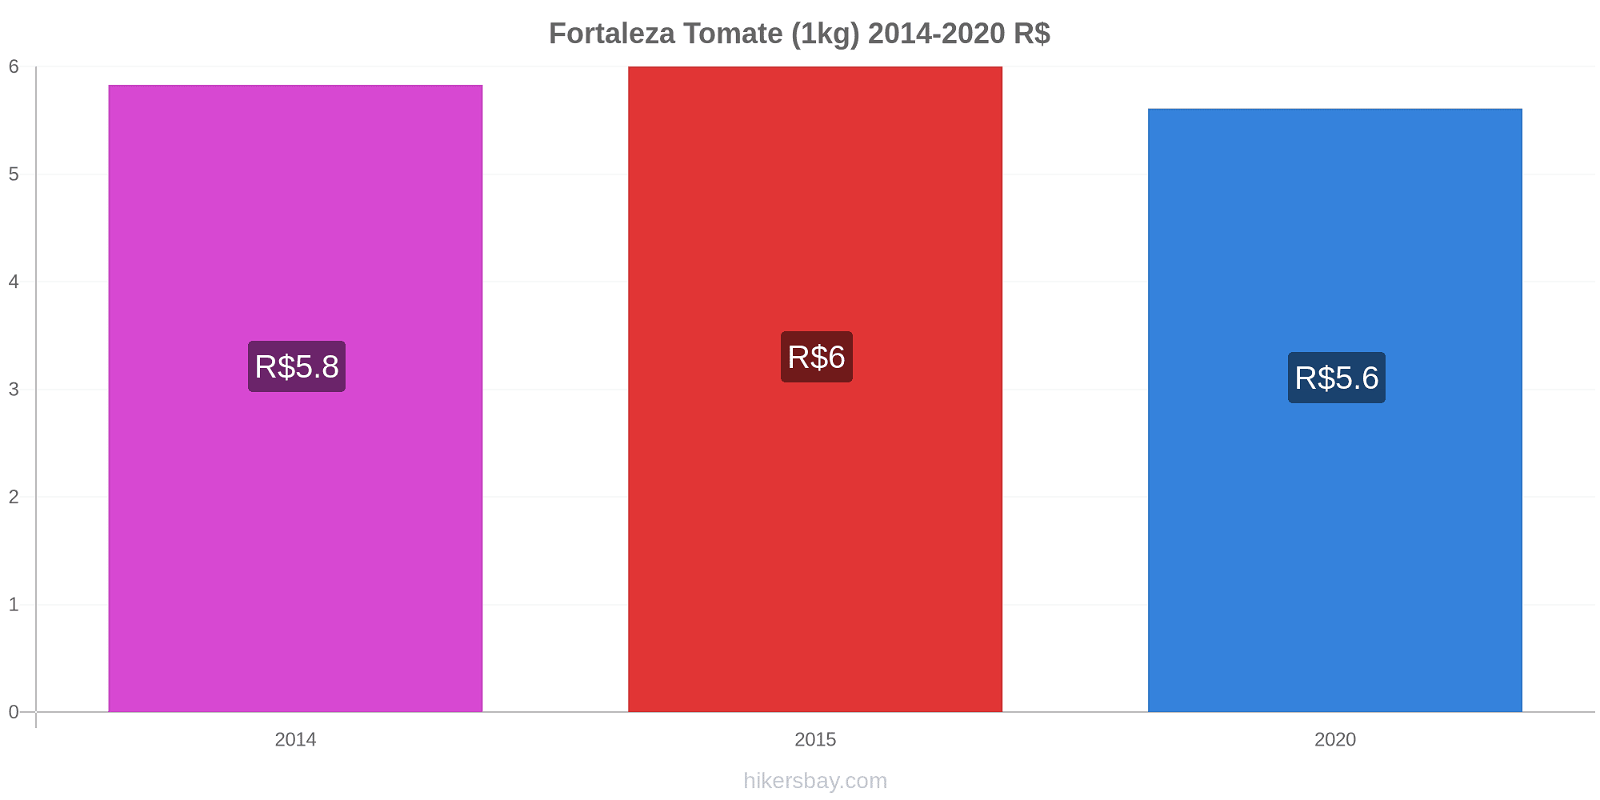 Fortaleza variação de preço Tomate (1kg) hikersbay.com